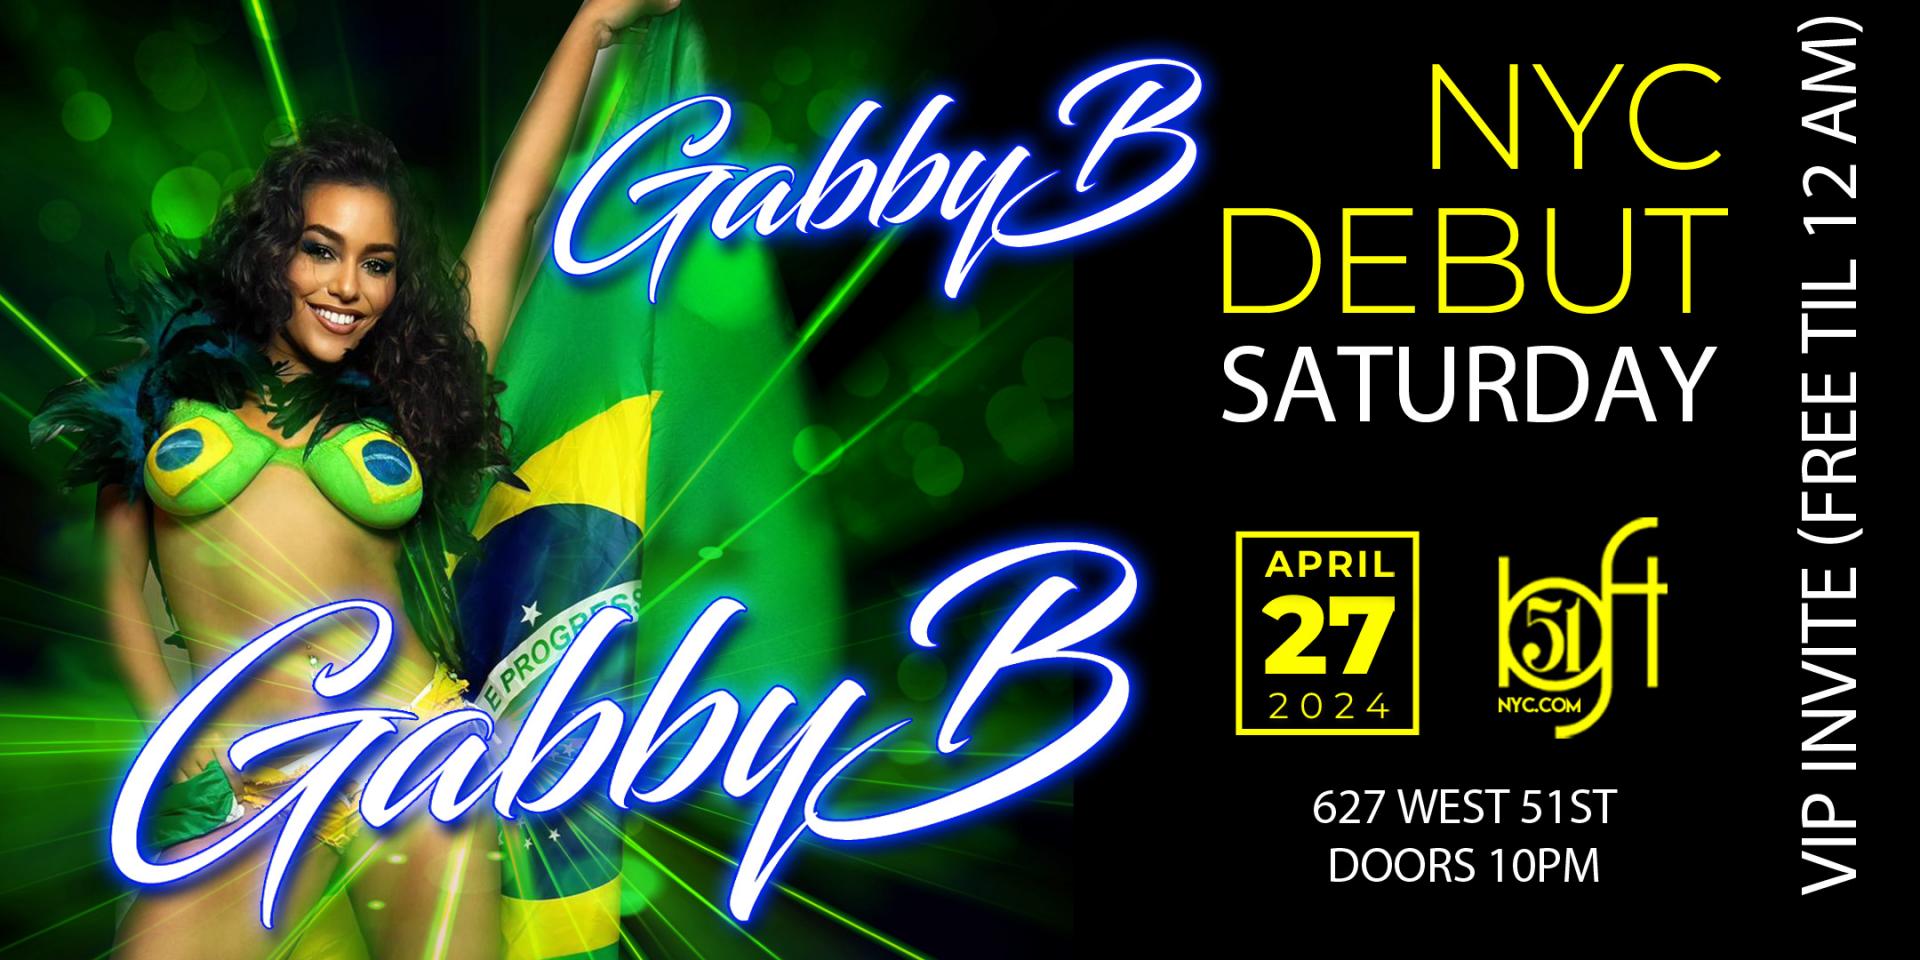 Gabby B - NYC DEBUT